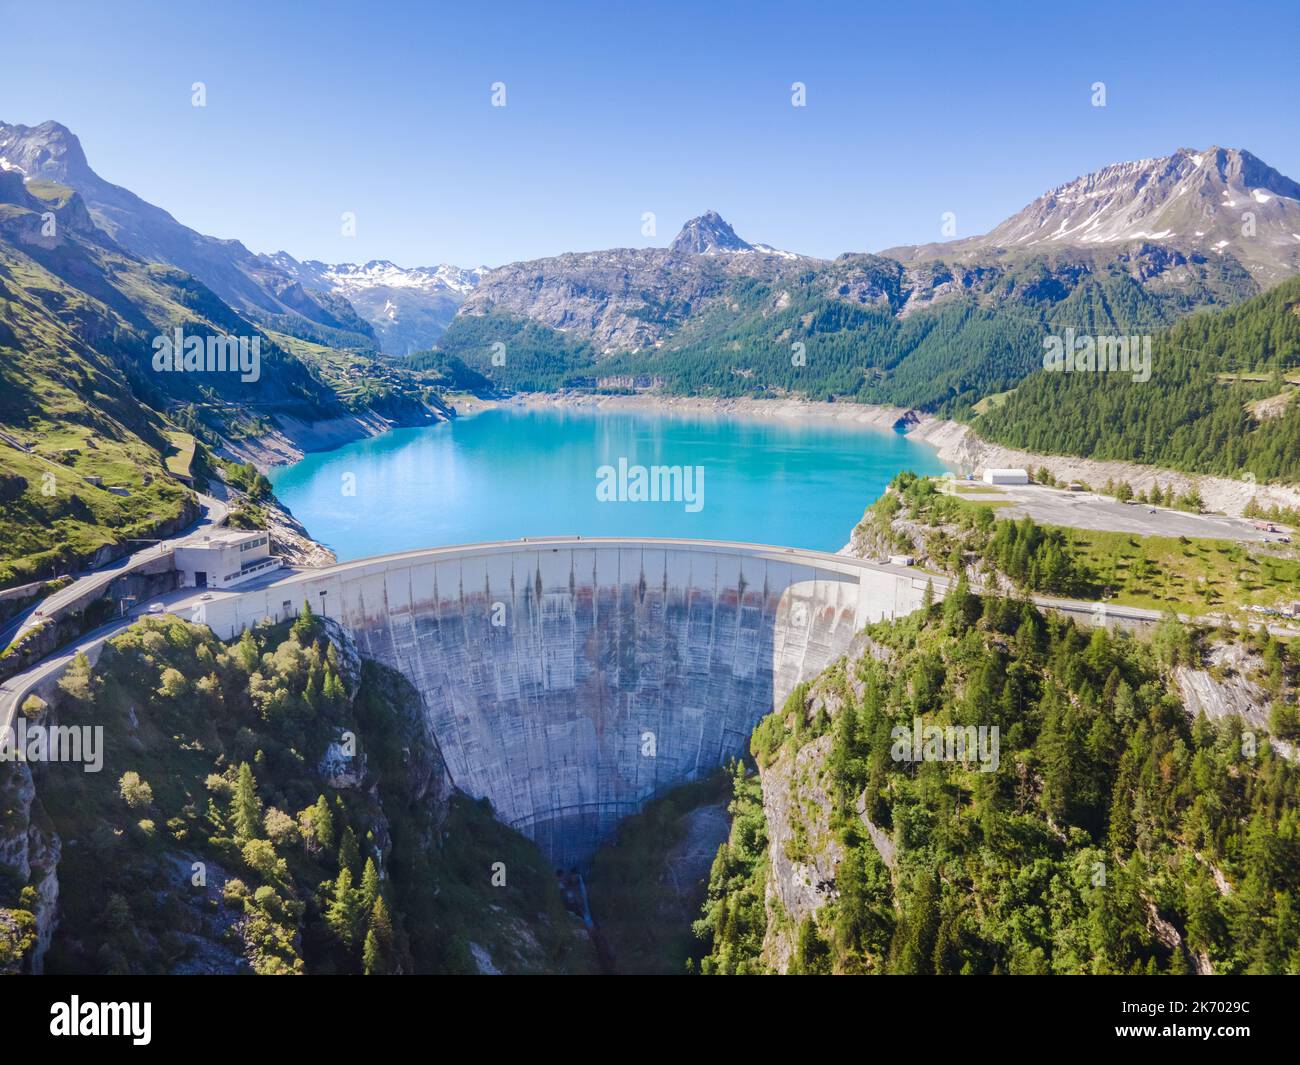 Wasserdamm und Stausee Luftbild in den Alpen Berge im Sommer Erzeugung von Wasserkraft. Geringer CO2-Fußabdruck, Dekarbonisierung, erneuerbare Energien, su Stockfoto